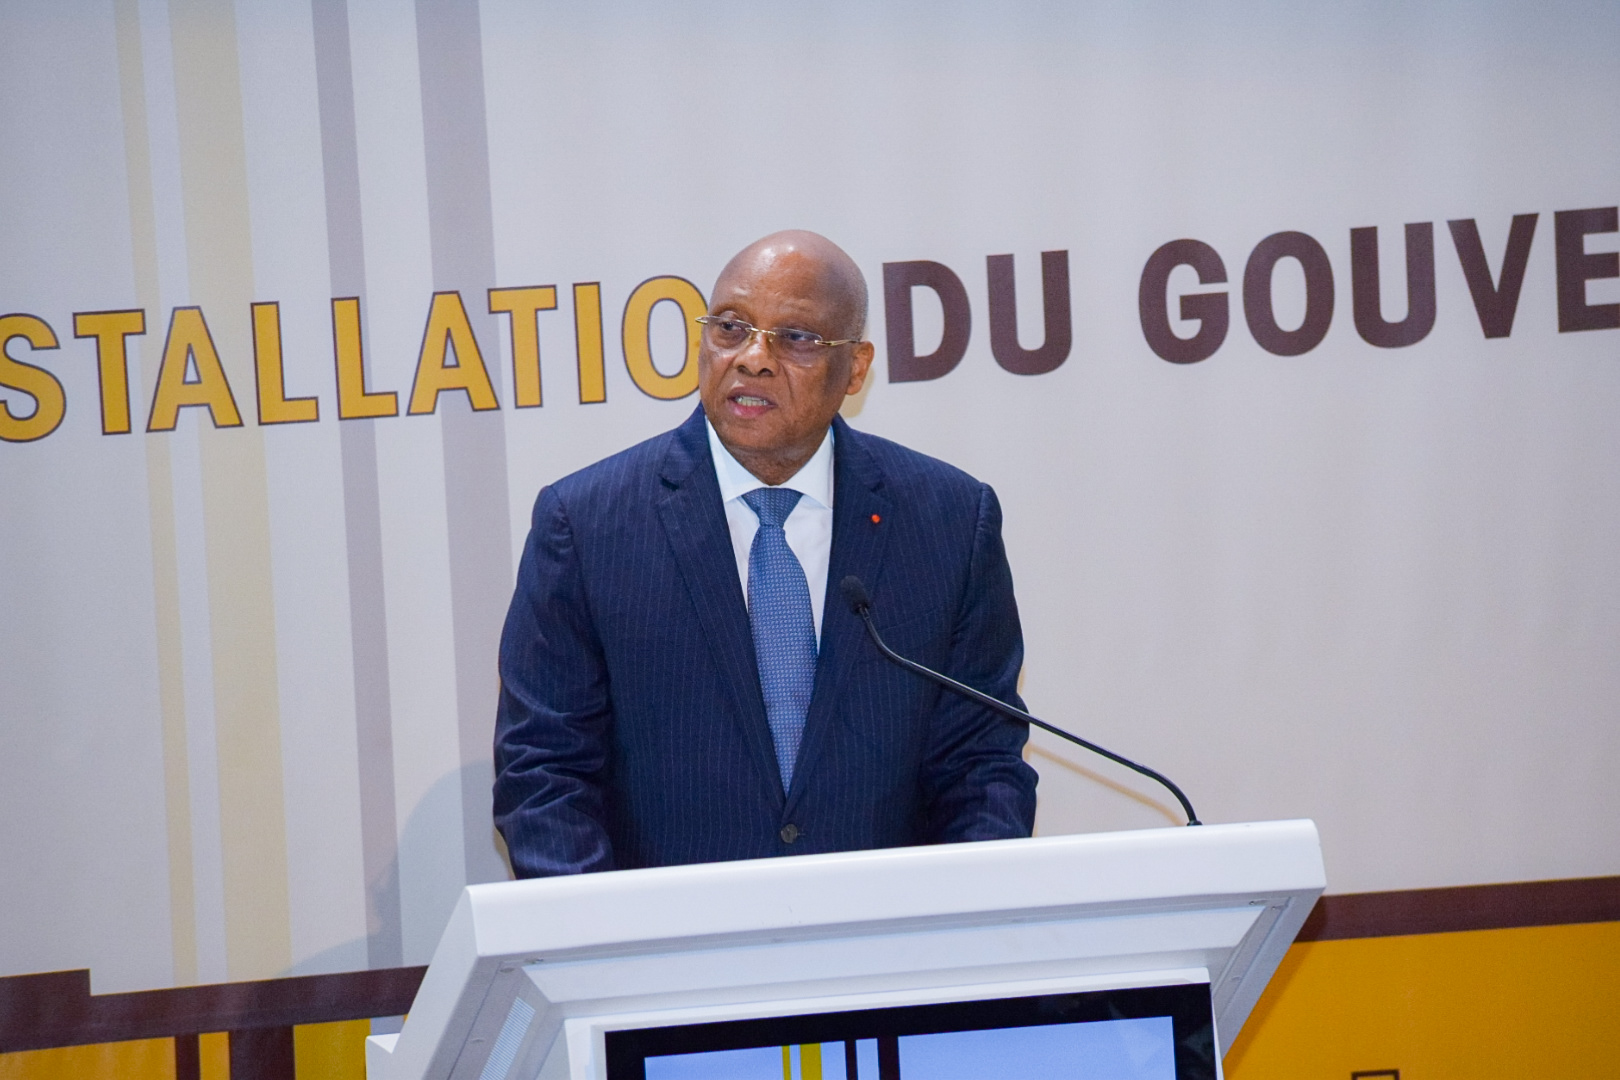 BCEAO : Jean-Claude Kassi Brou a été officiellement installé ce vendredi 25 novembre à Dakar dans ses fonctions de Gouverneur.